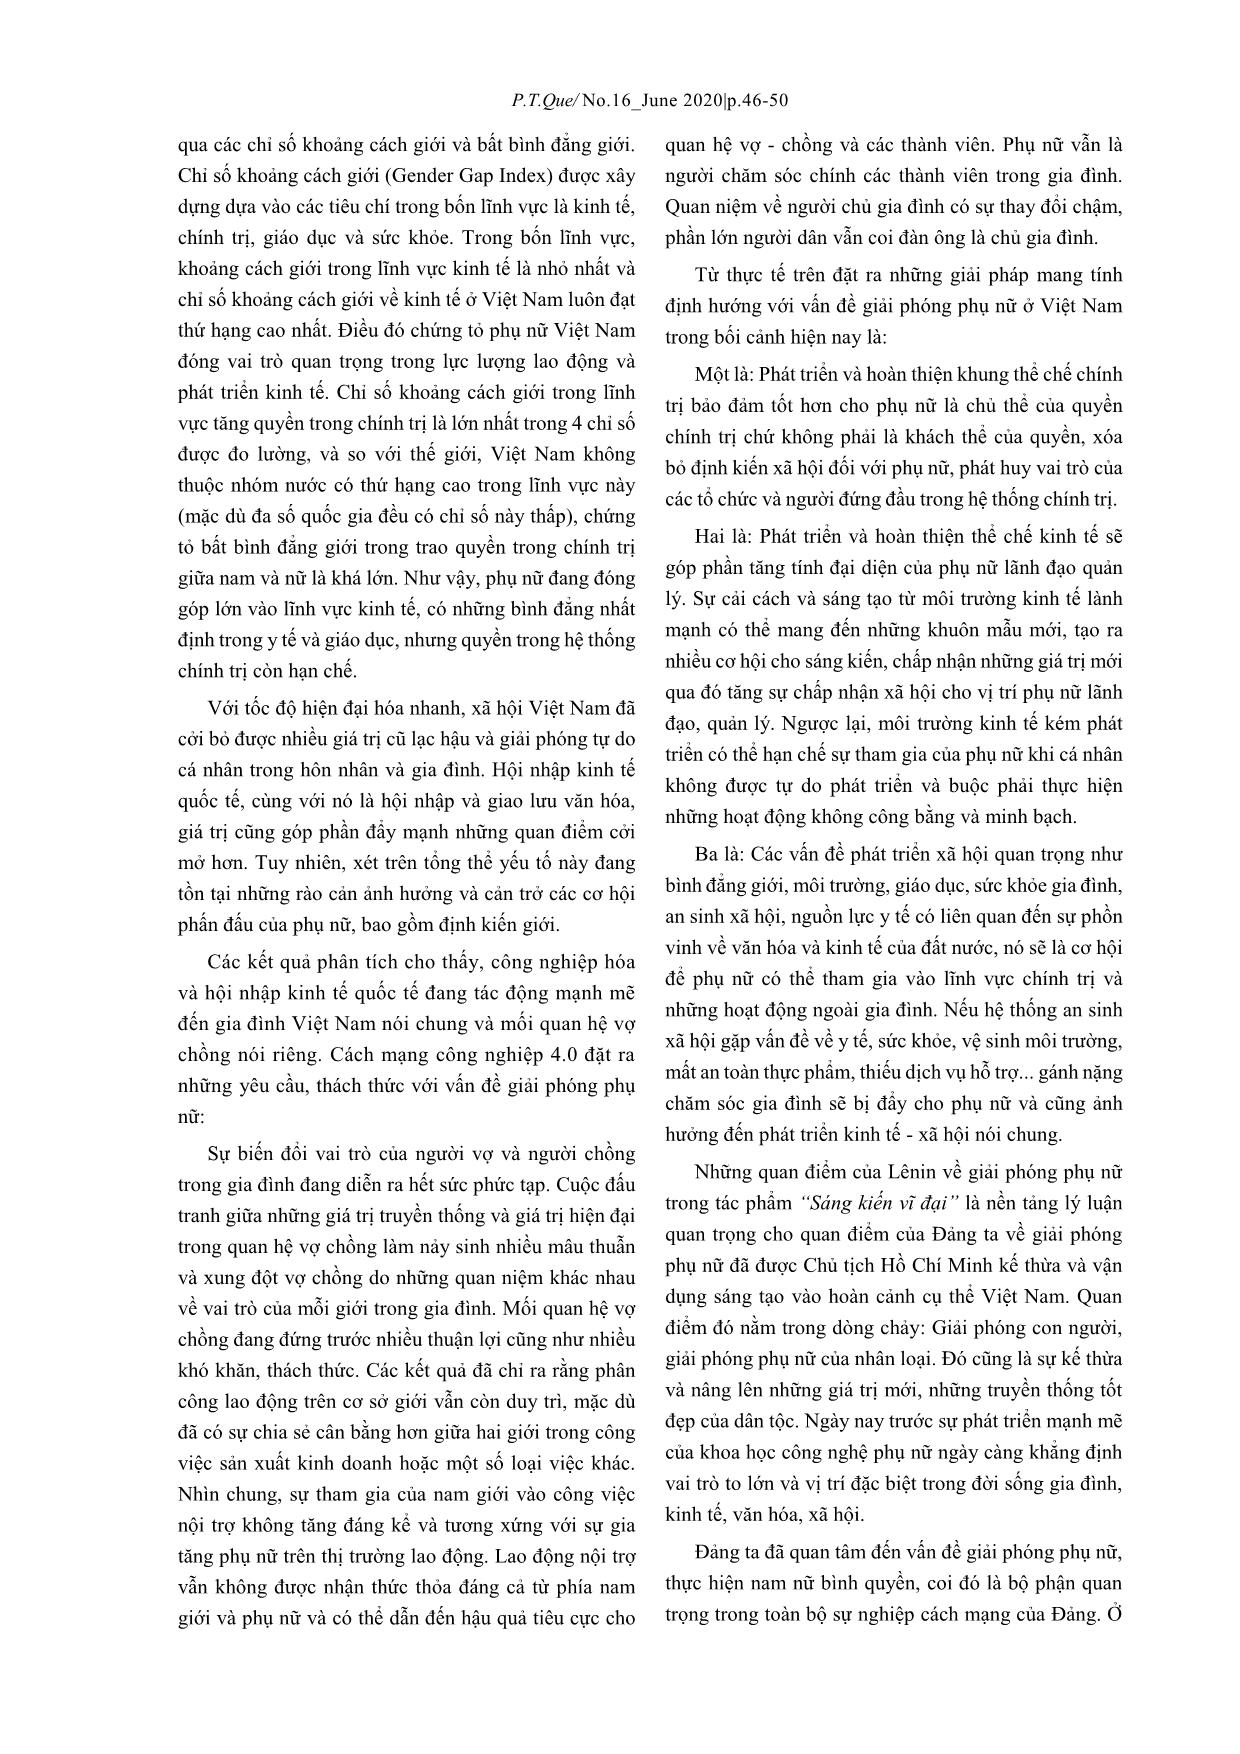 Tư tưởng V.I.Lênin về giải phóng phụ nữ qua tác phẩm “Sáng kiến vĩ đại” - Ý nghĩa đối với Việt Nam trong bối cảnh cách mạng công nghiệp 4.0 trang 4